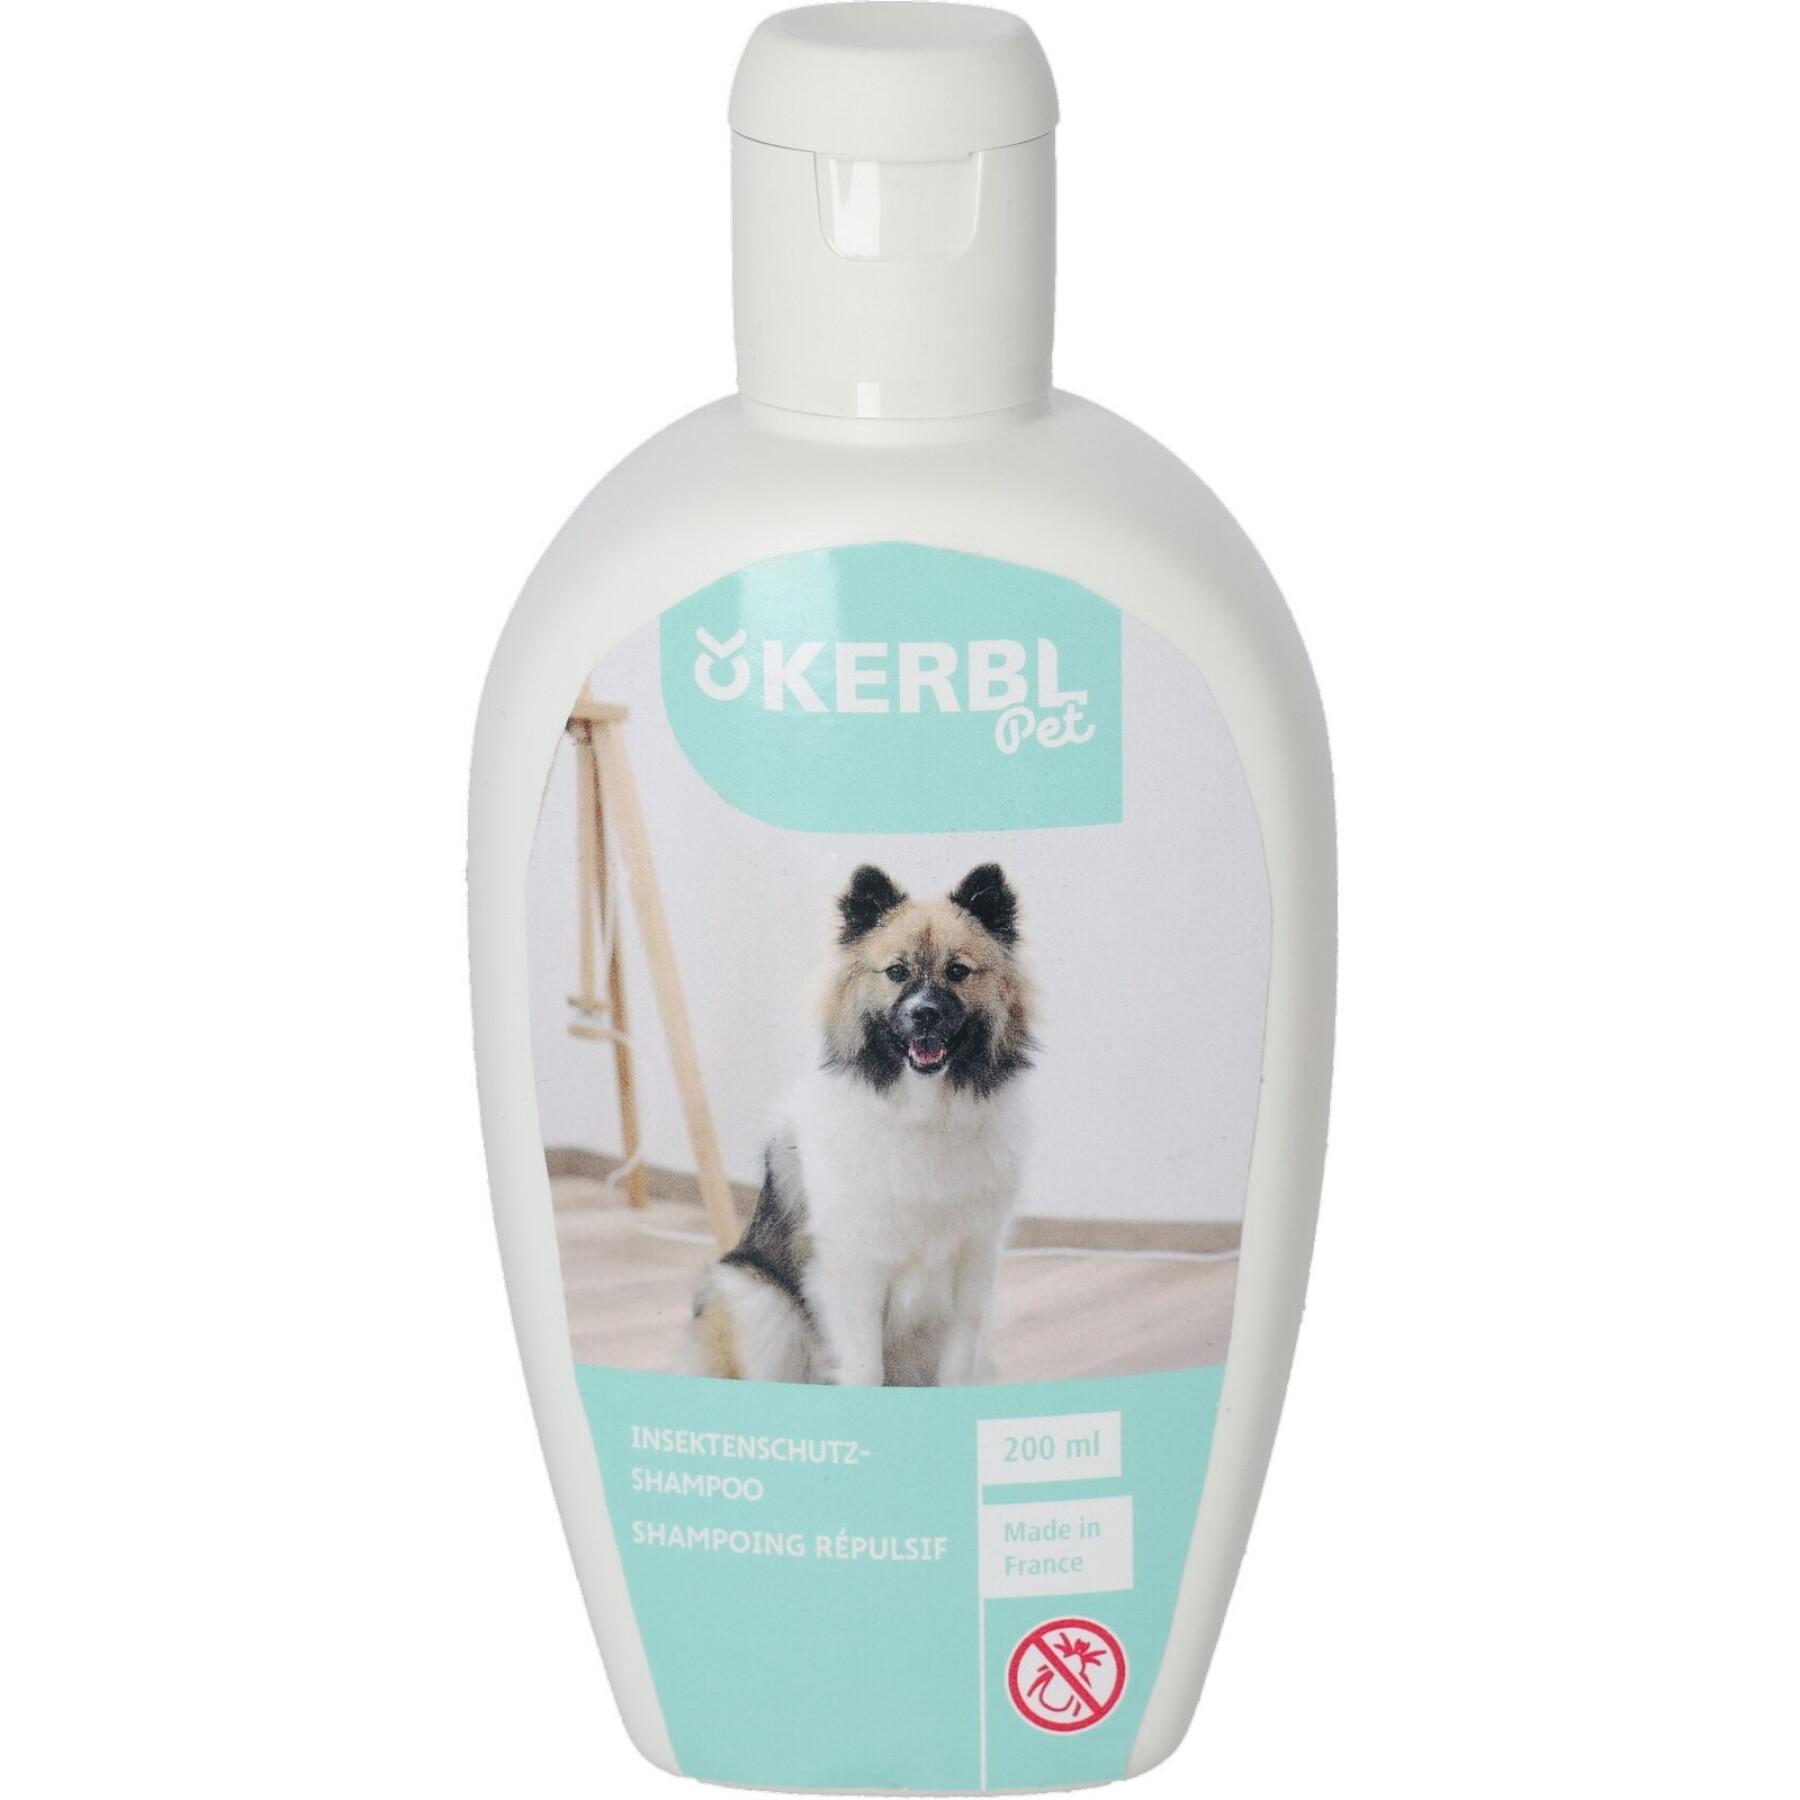 Shampoo insetticida per cani al profumo di lampone Kerbl